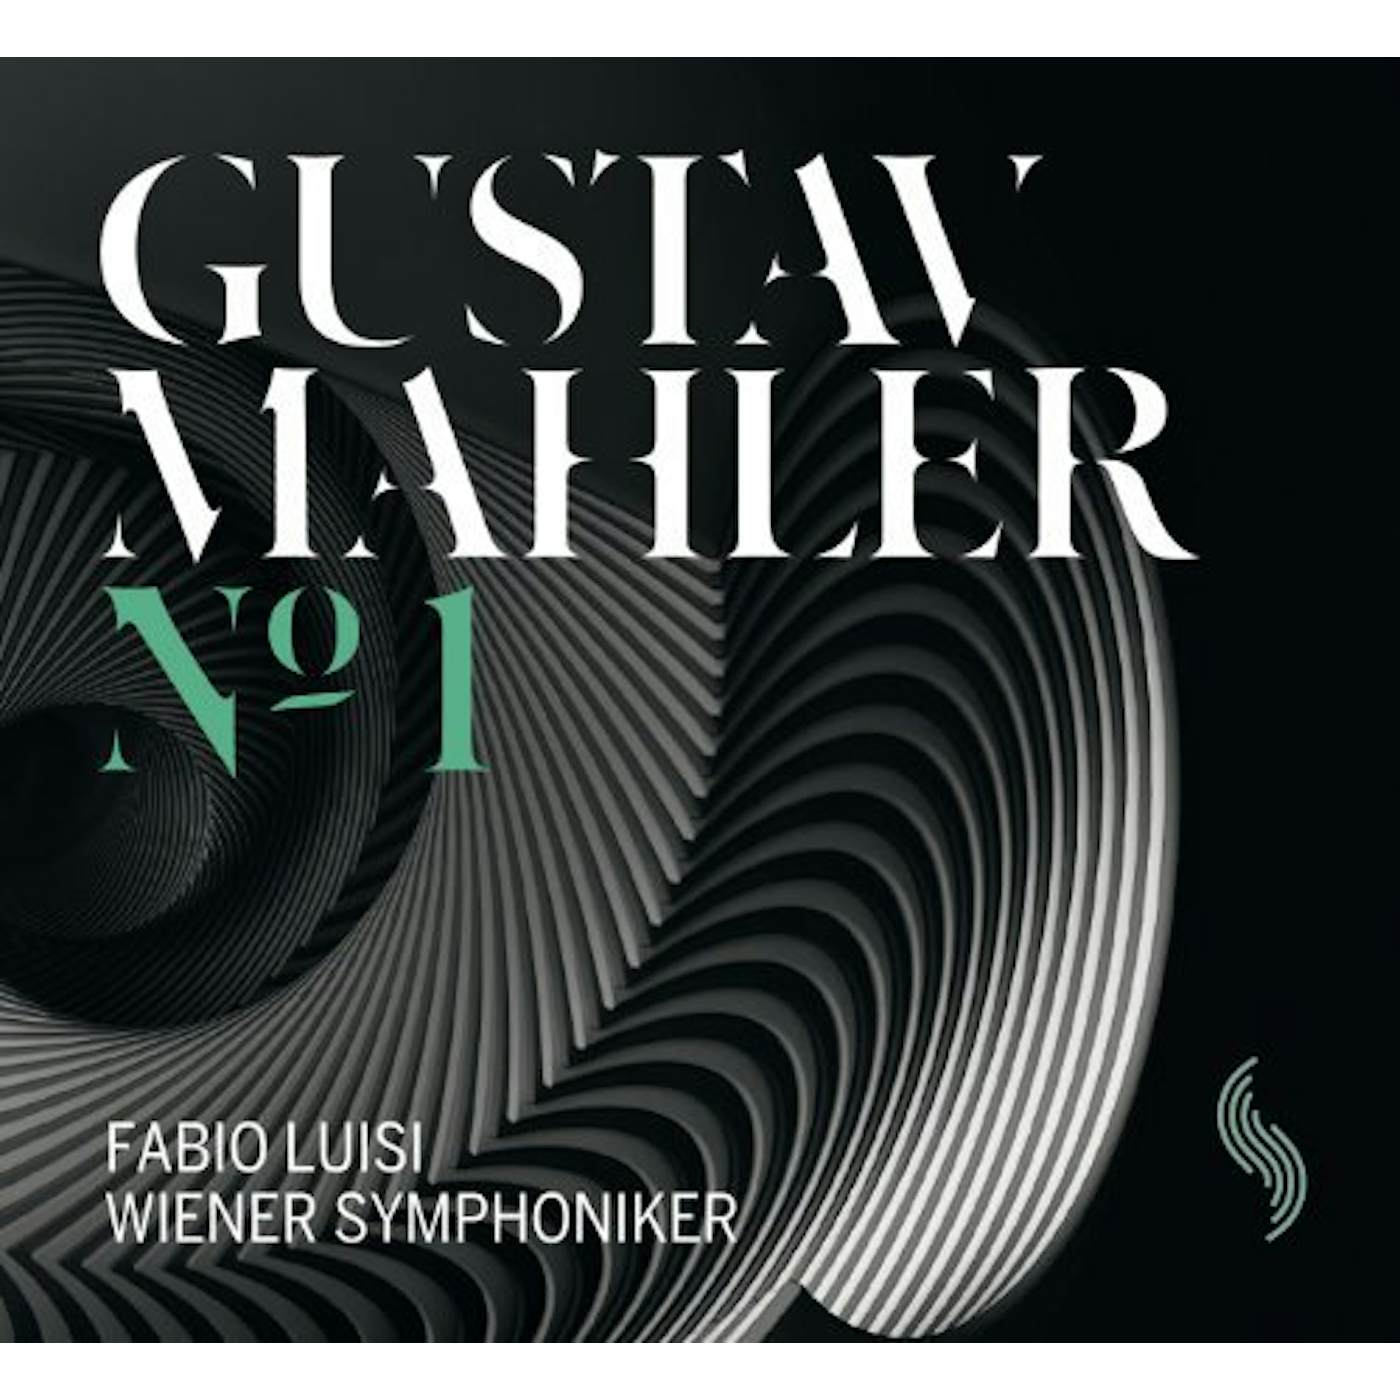 Gustav Mahler SYMPHONY NO. 1 Vinyl Record